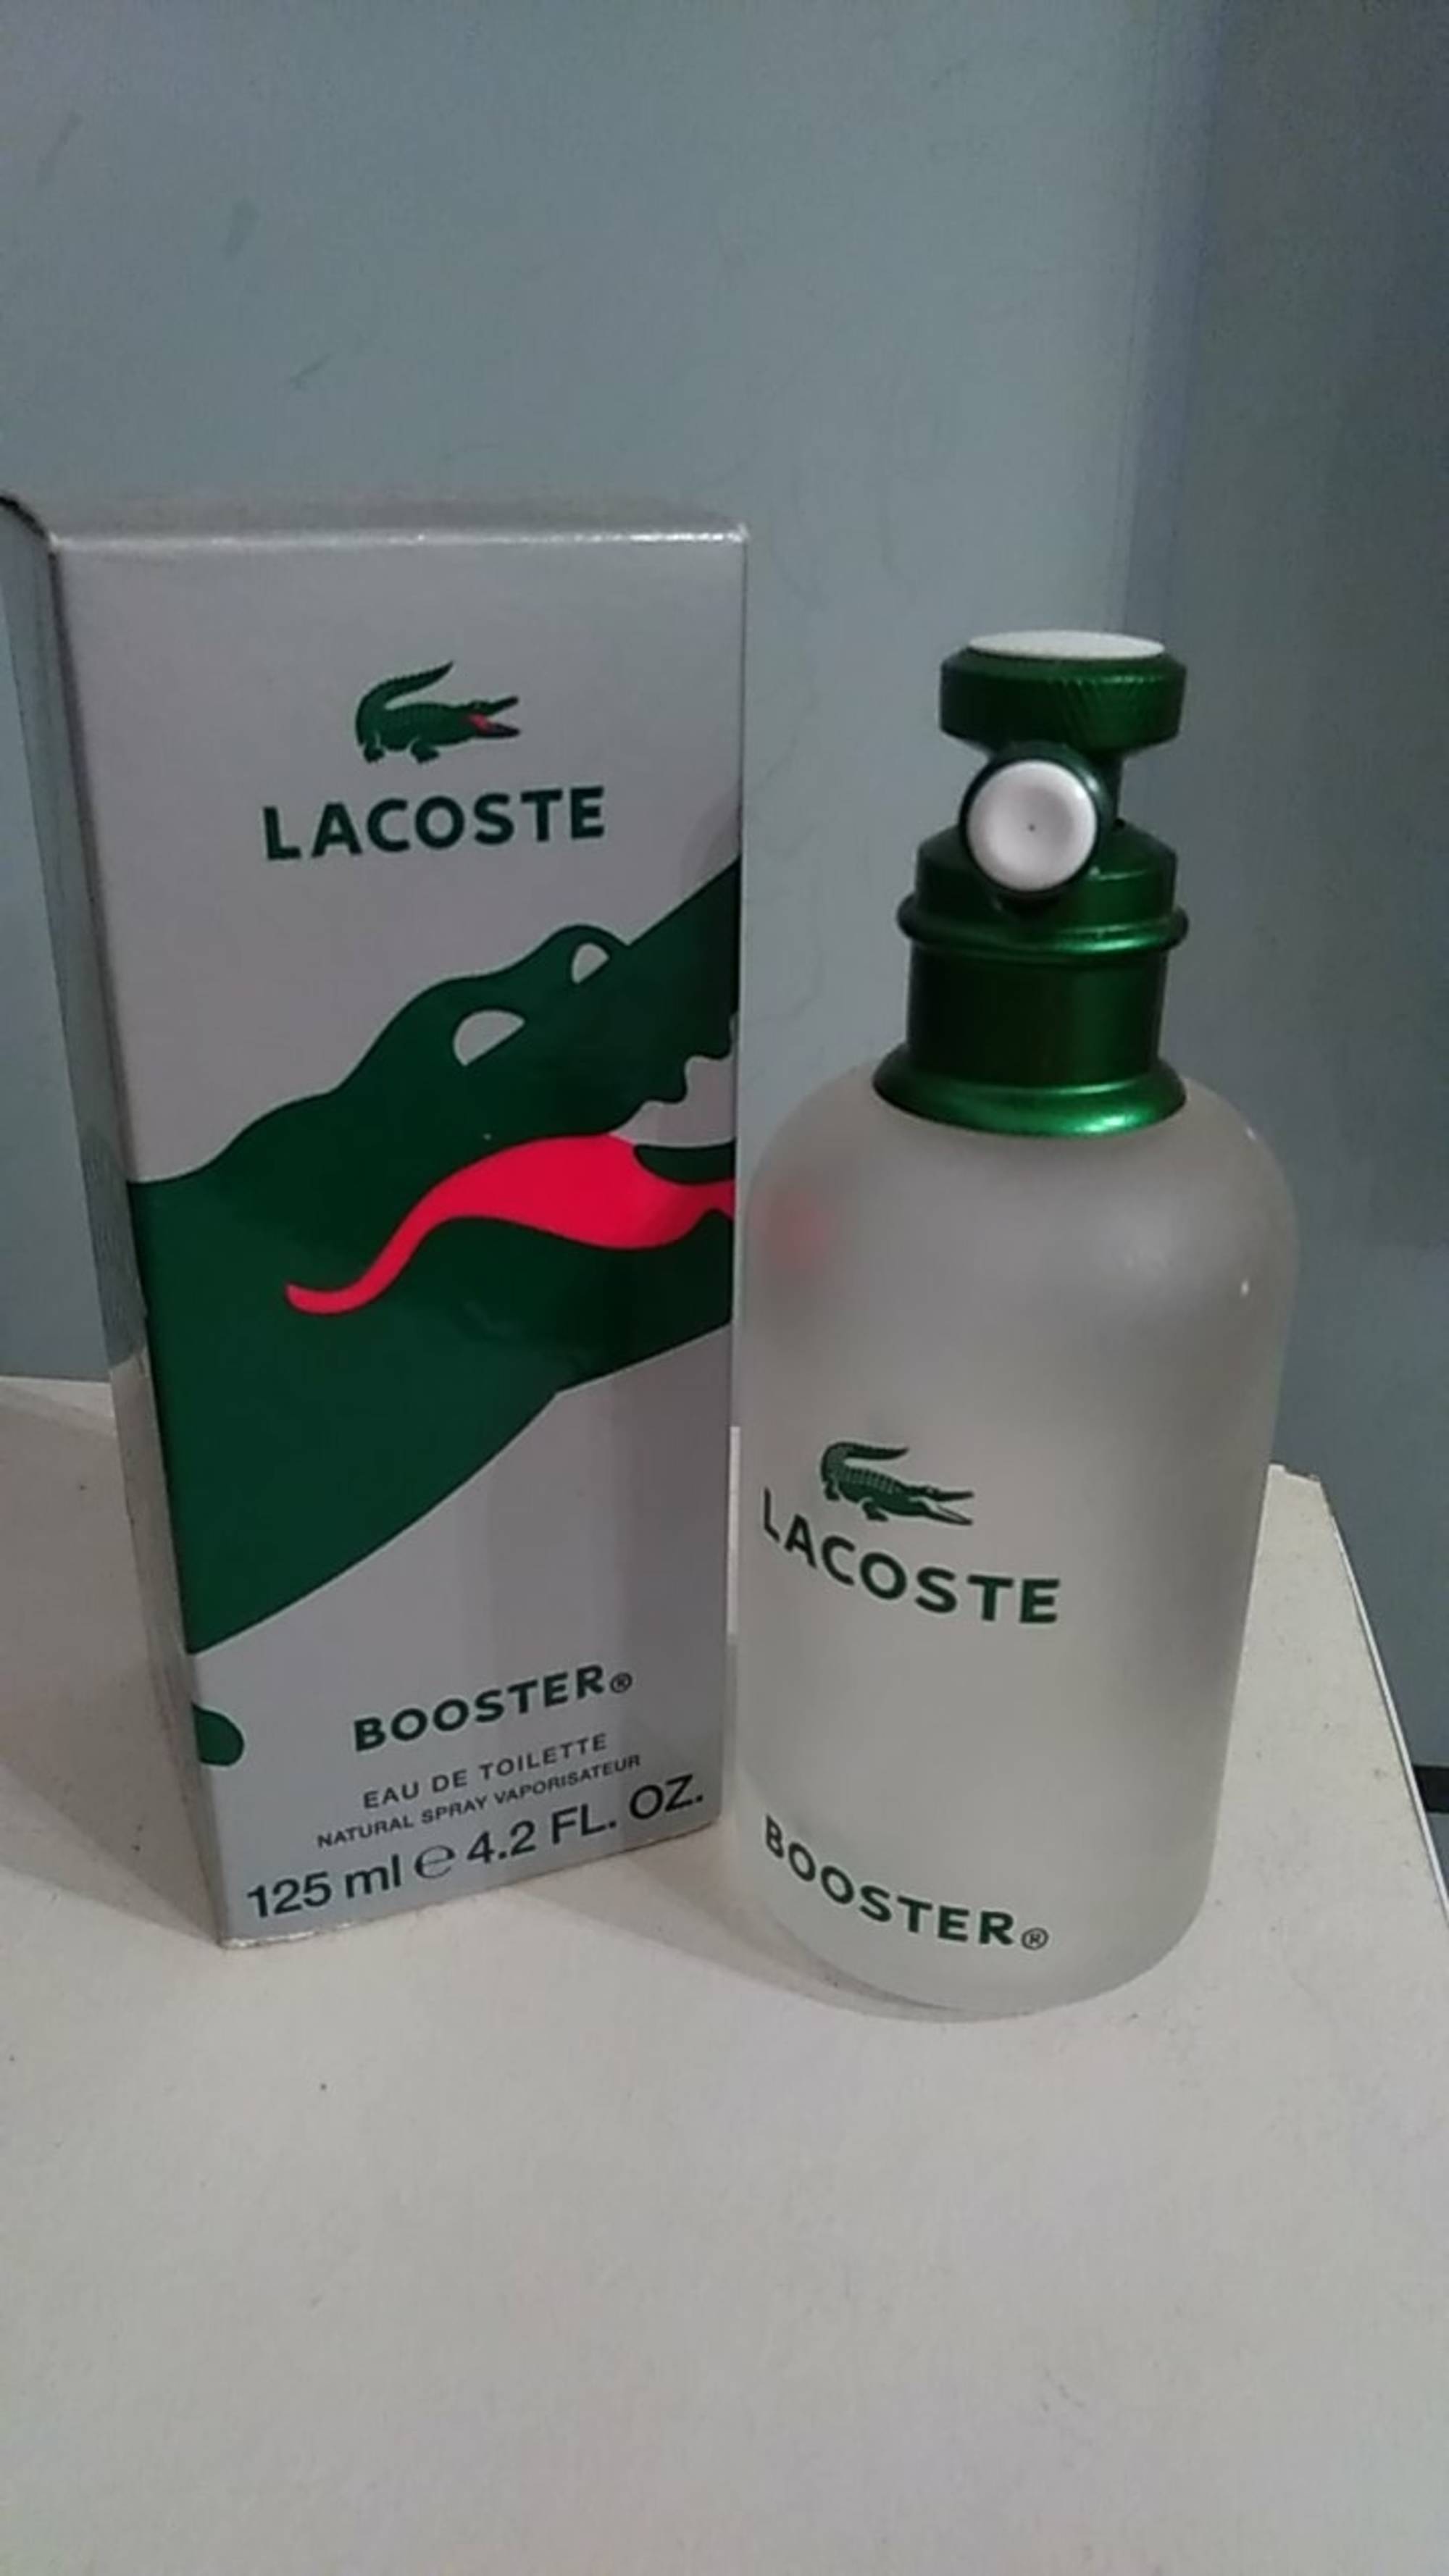 LACOSTE - Booster - Eau de toilette